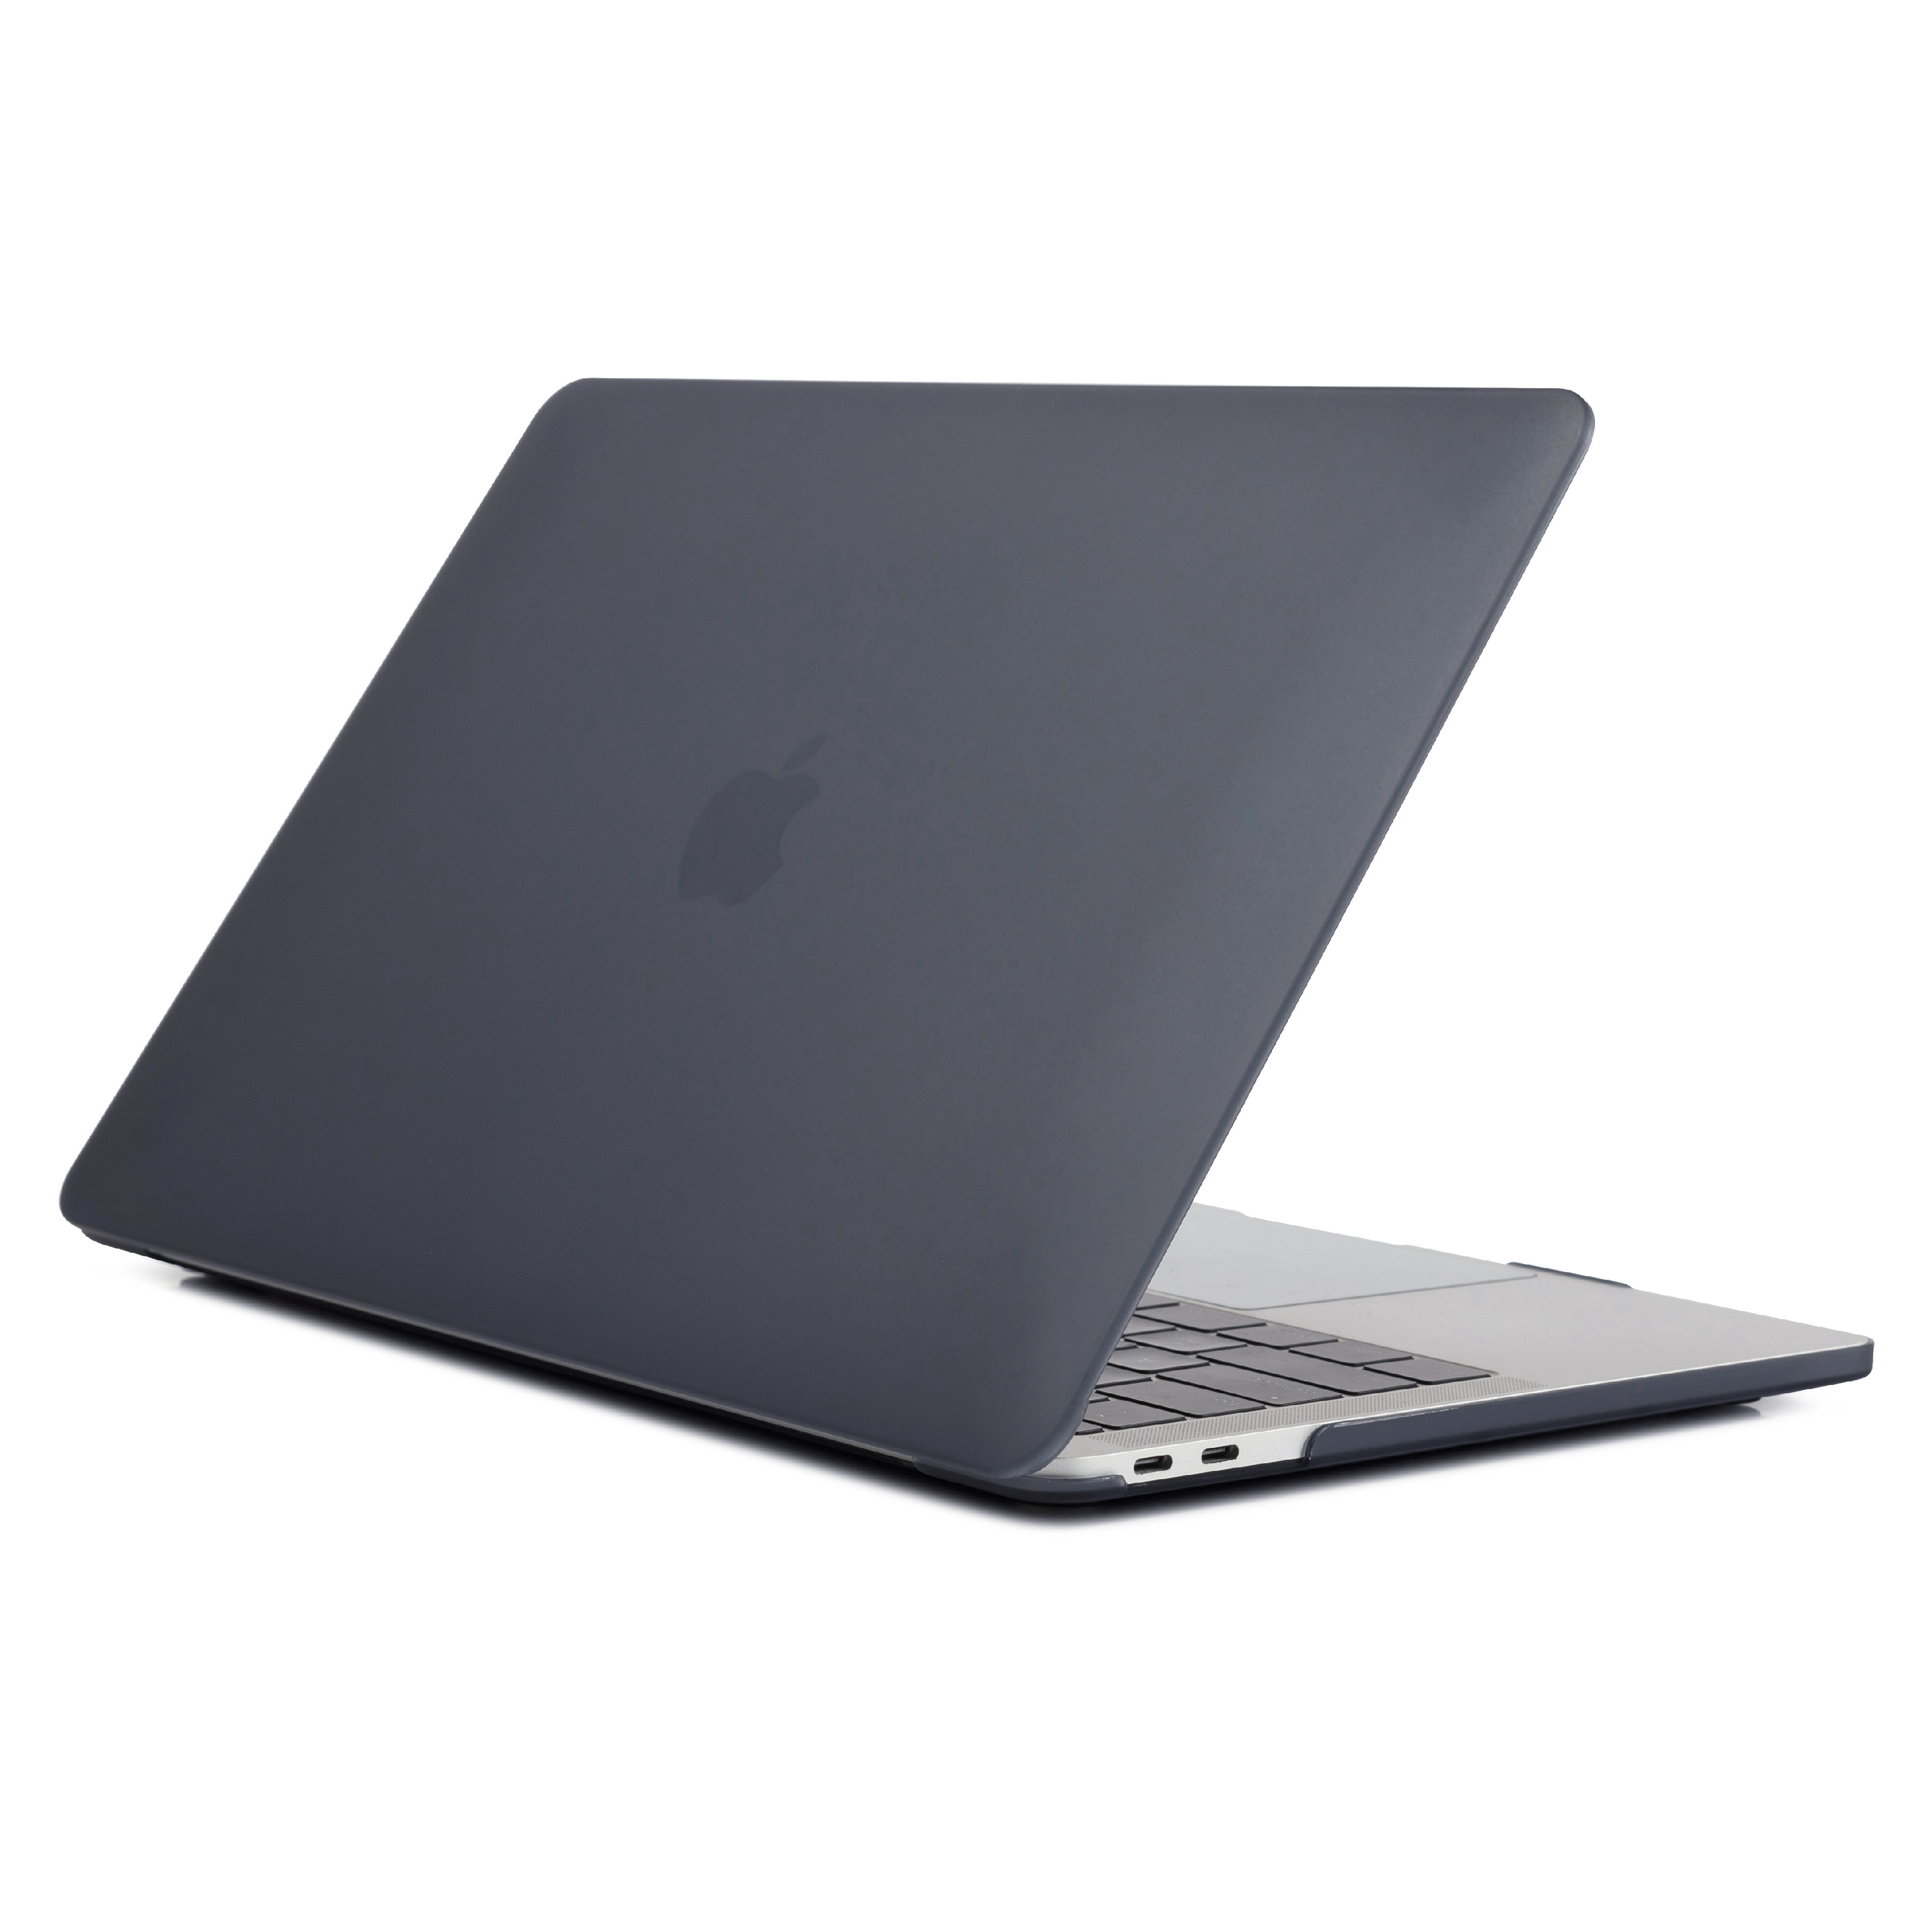 iPouzdro.cz pro MacBook Pro 15 (2012-2015) 2222221001514 černá